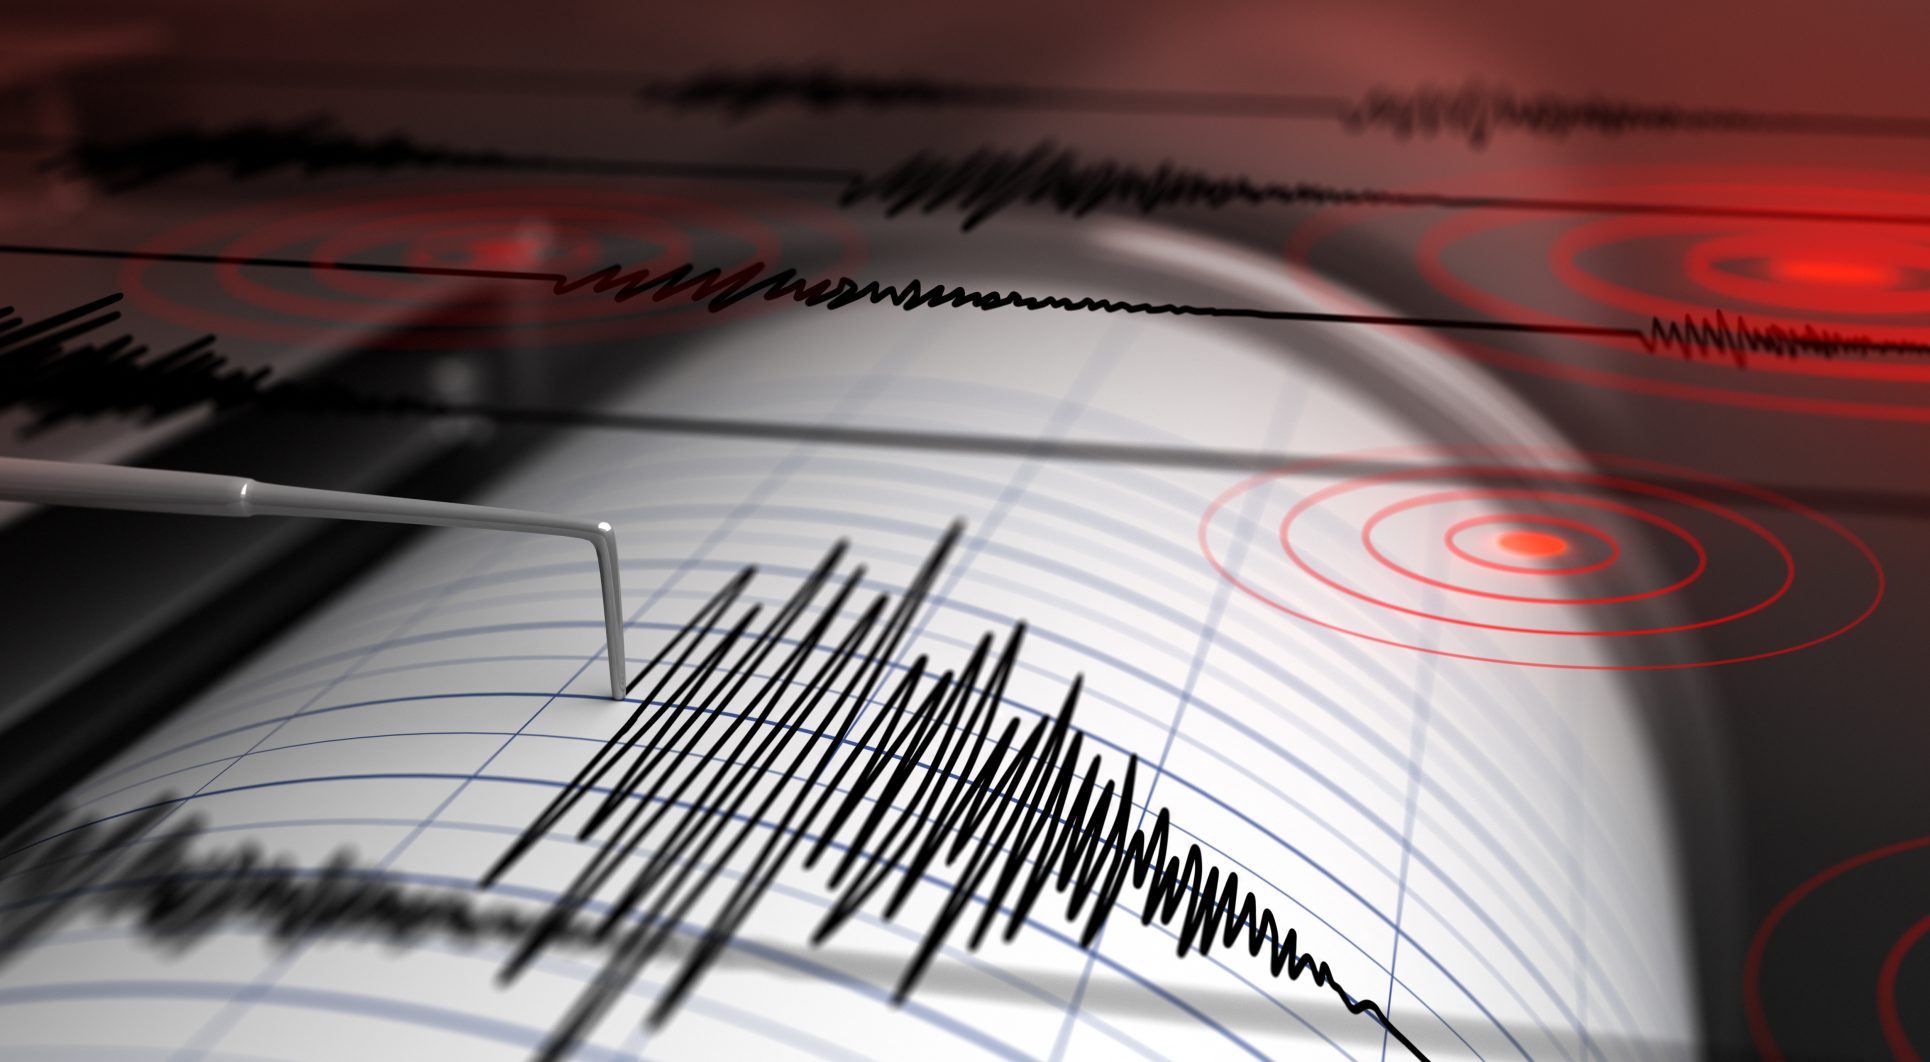 Ovsicori monitorea sector de Desamparados por enjambre sísmico